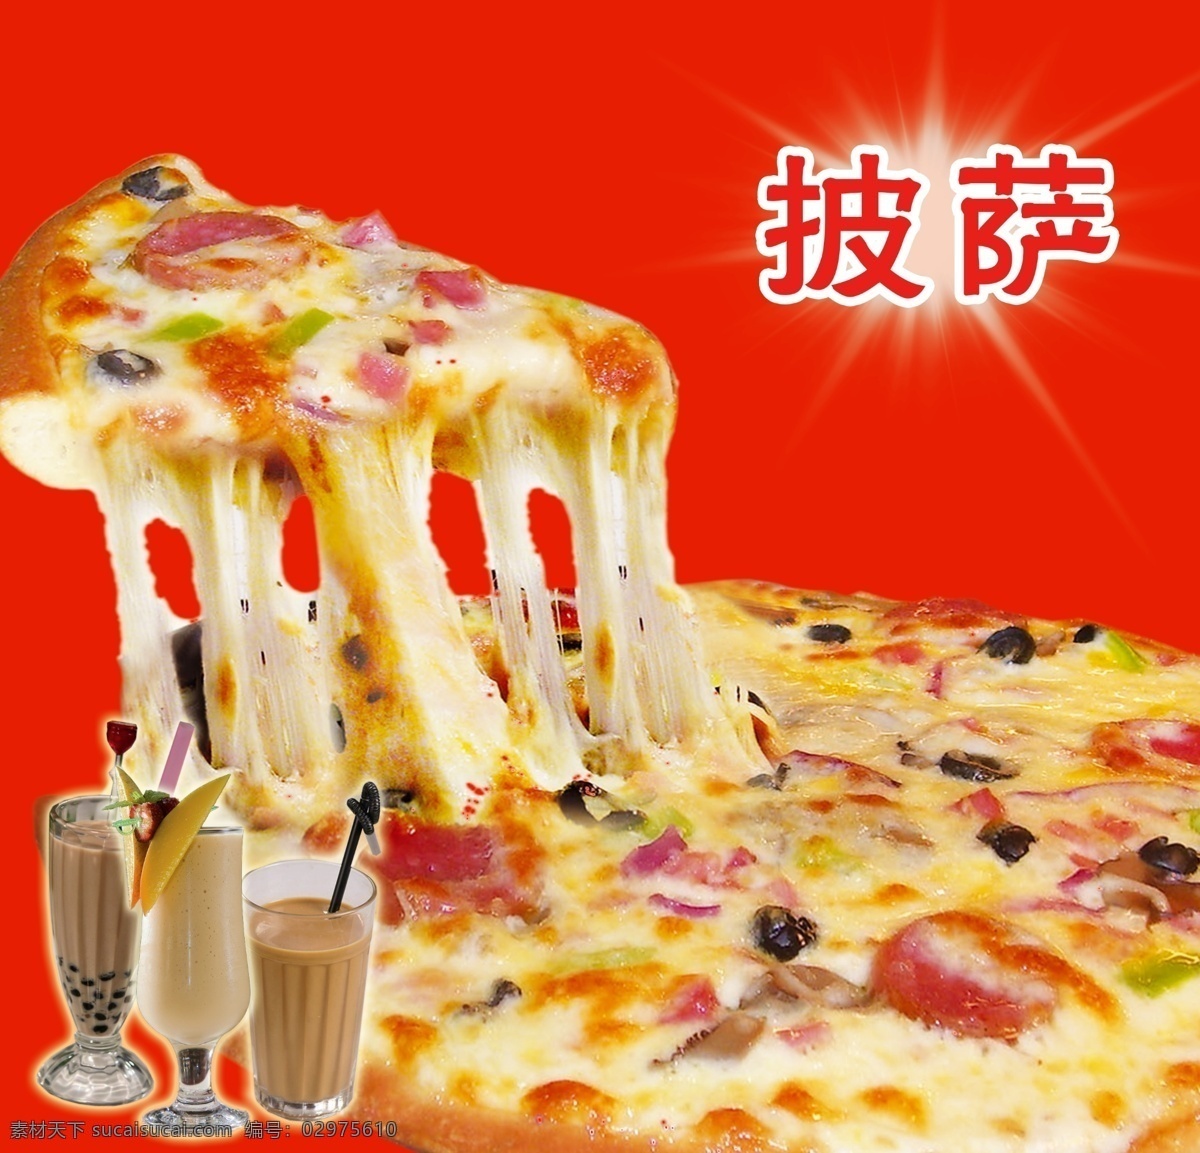 披萨美食图 披萨 拉丝披萨 奶茶饮品 美食 海报